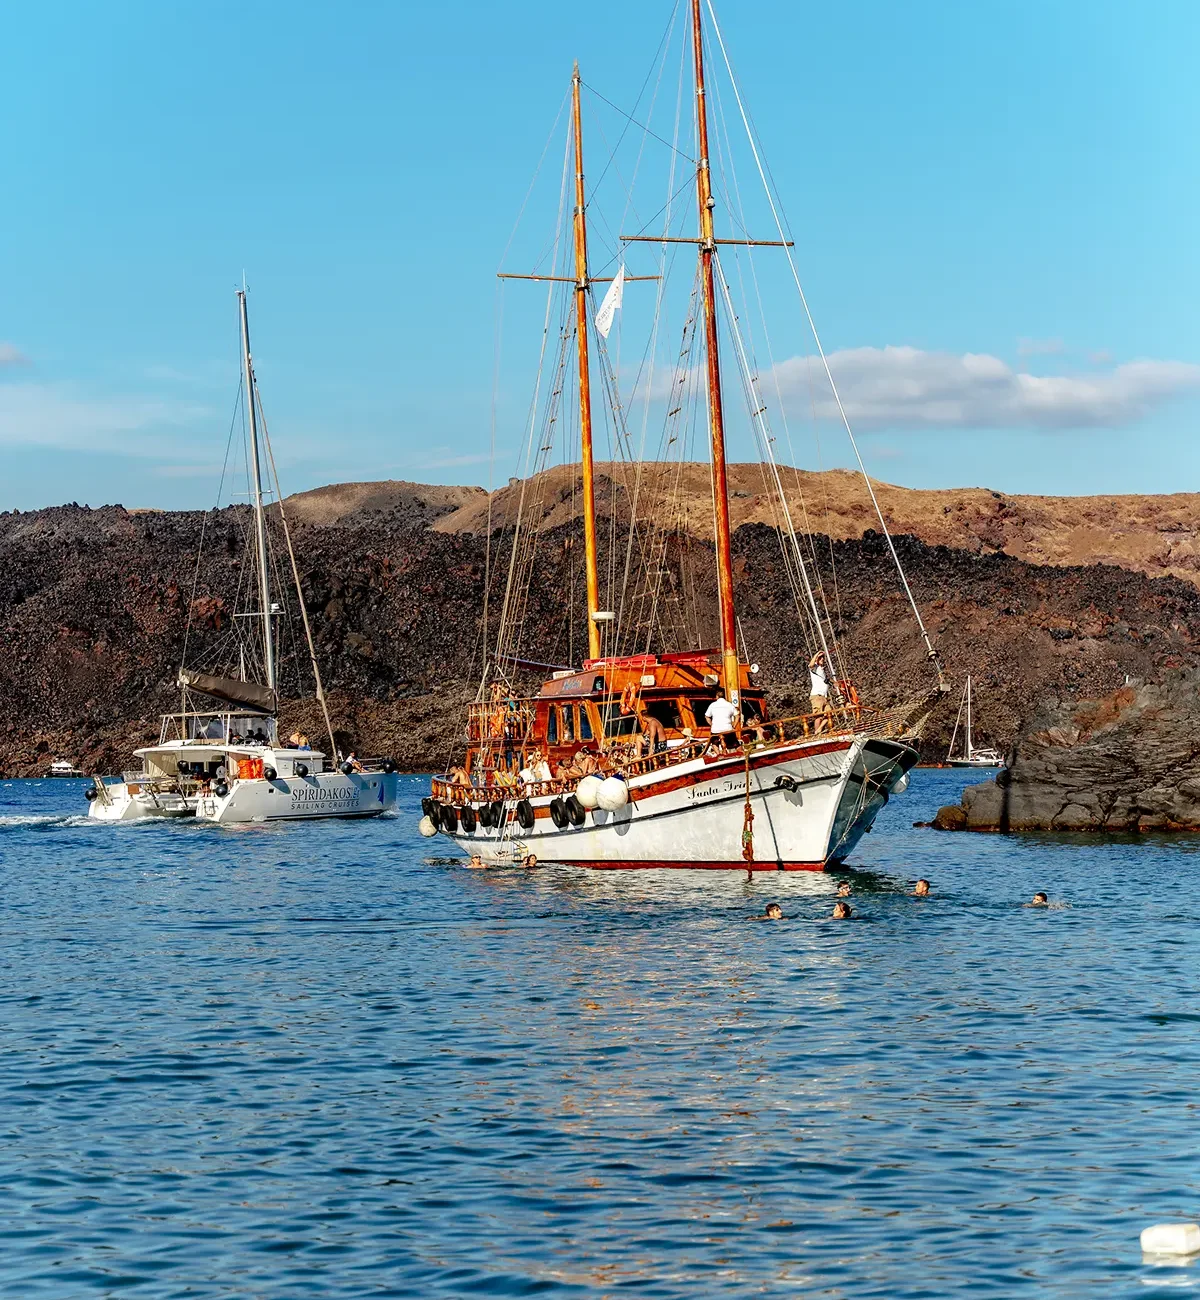 santorini-boat-tours-catamaran